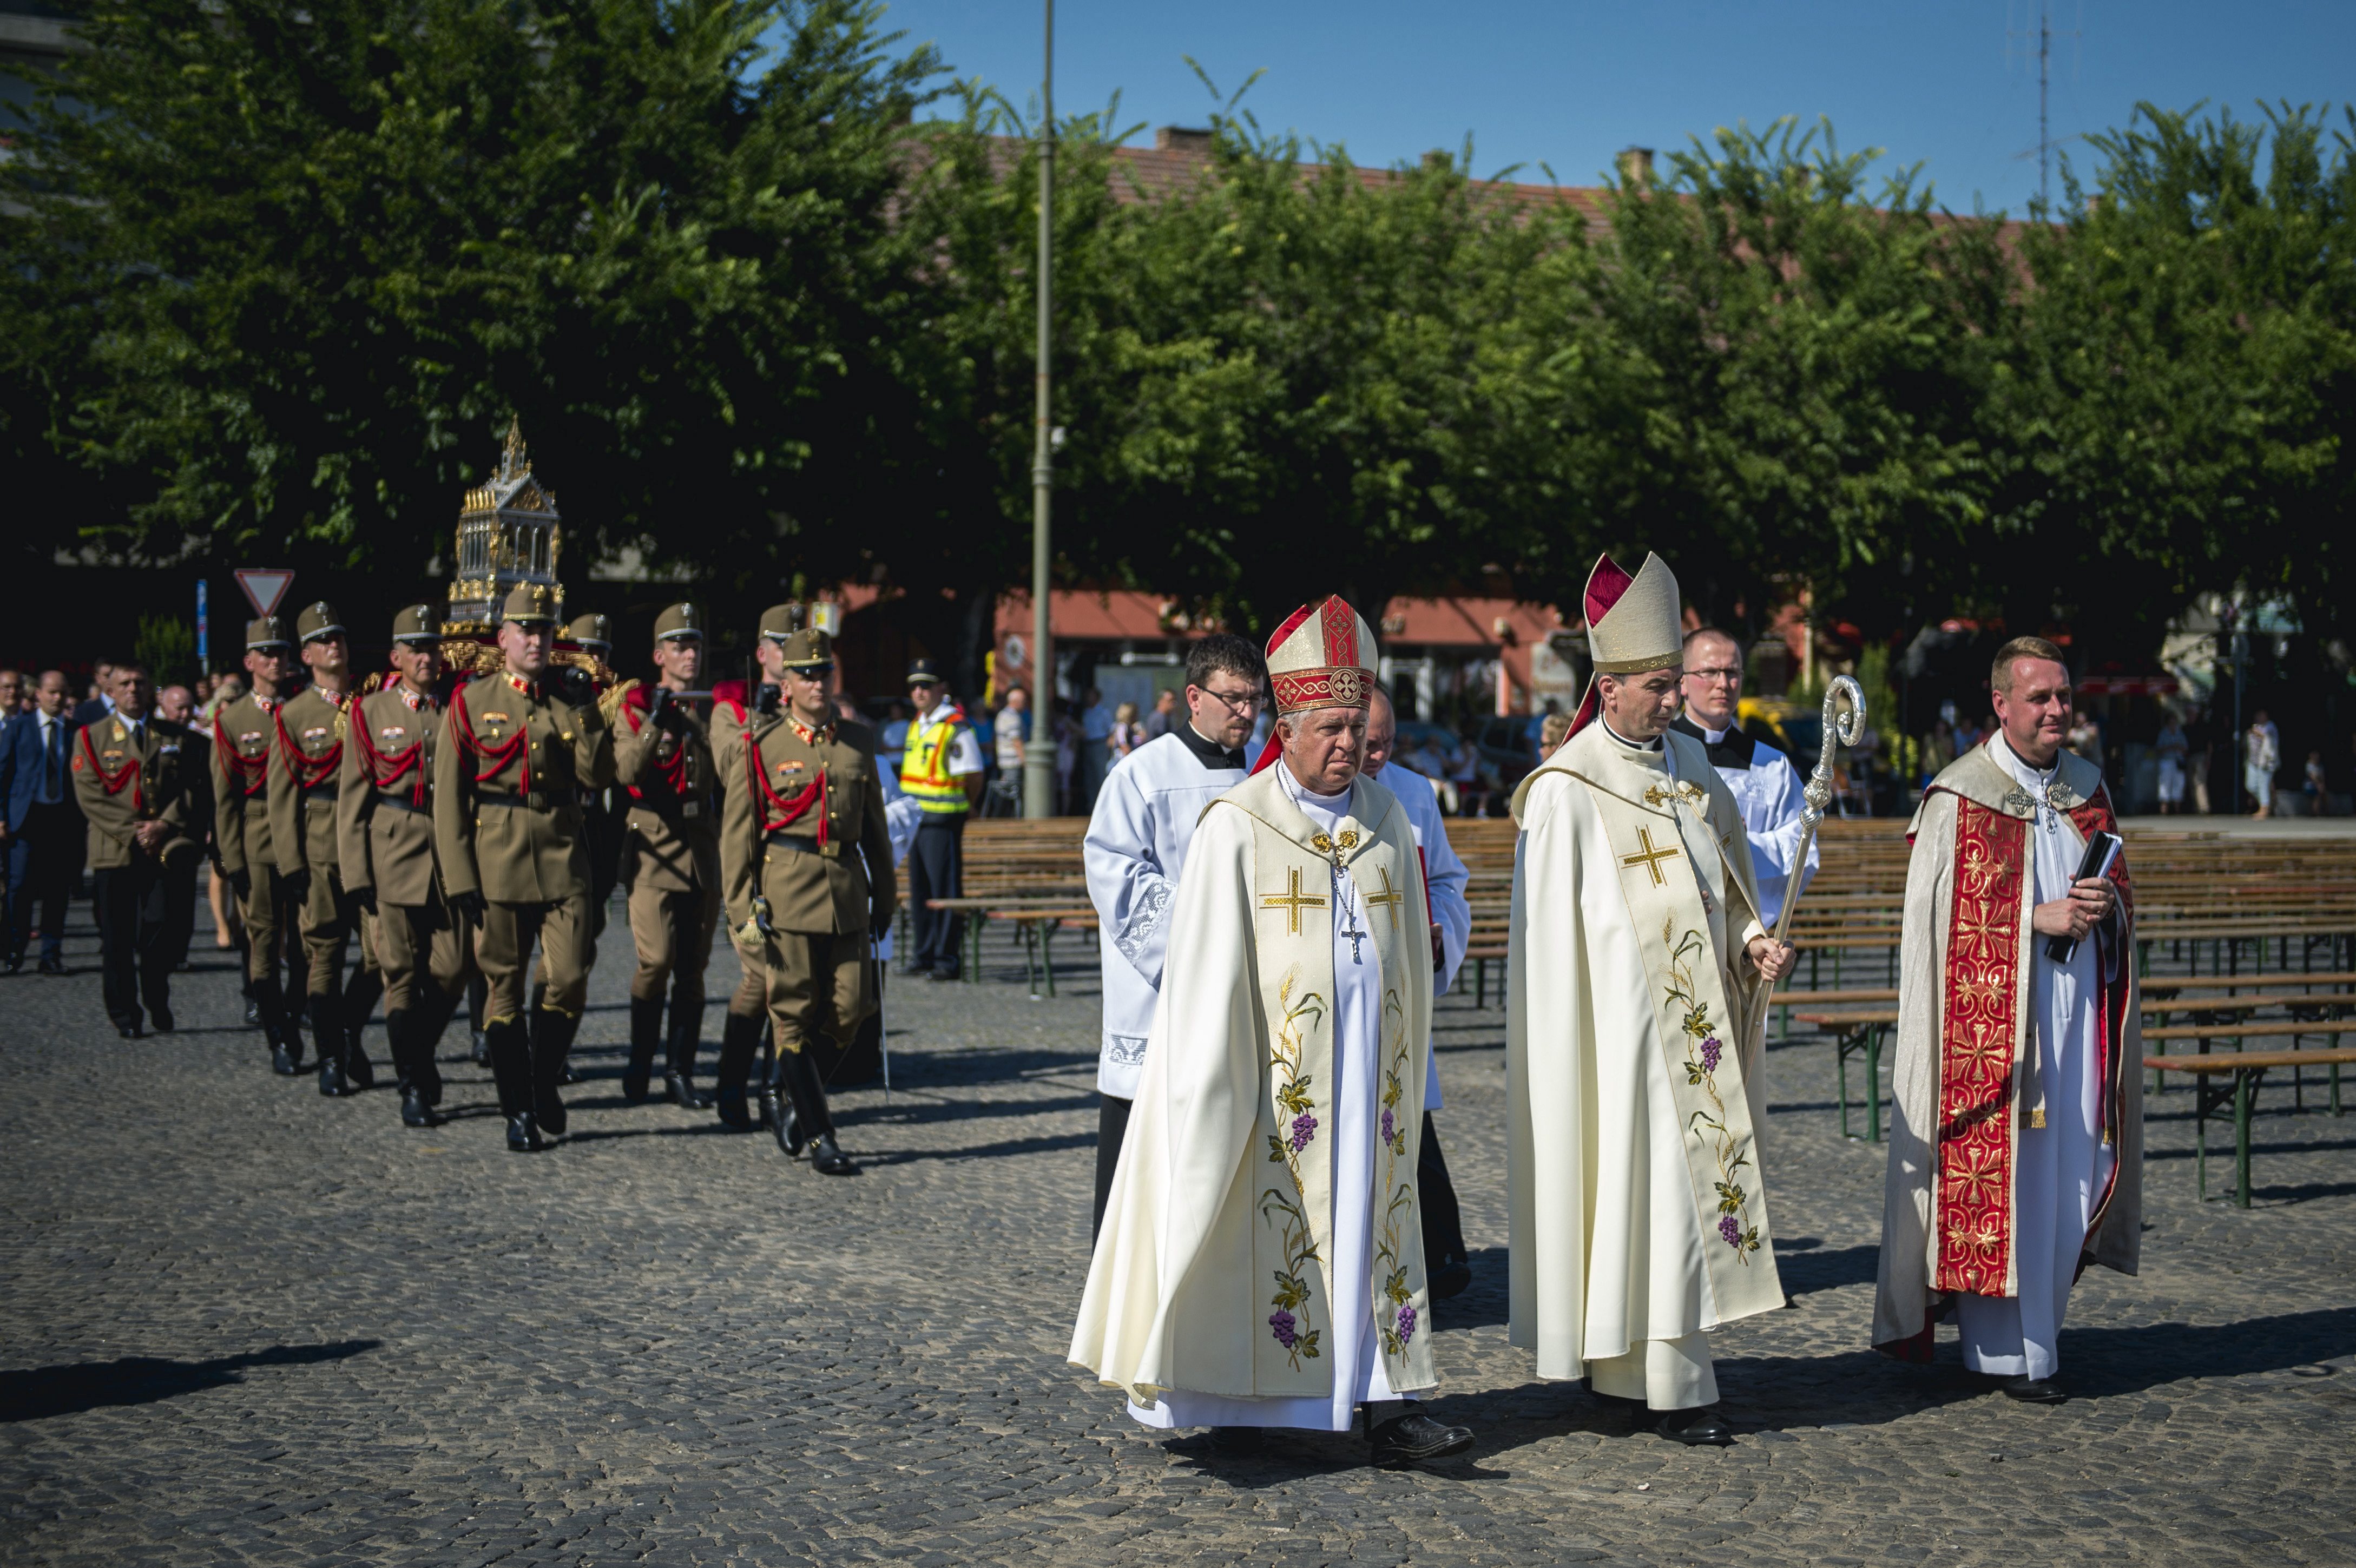 Udvardy György pécsi megyés püspök (b2) és Snell György püspök, a Szent Jobb őre (b) a Szent Jobb-körmeneten, a mohácsi csata 490. évfordulója alkalmából tartott megemlékezésen 2016. augusztus 28-án